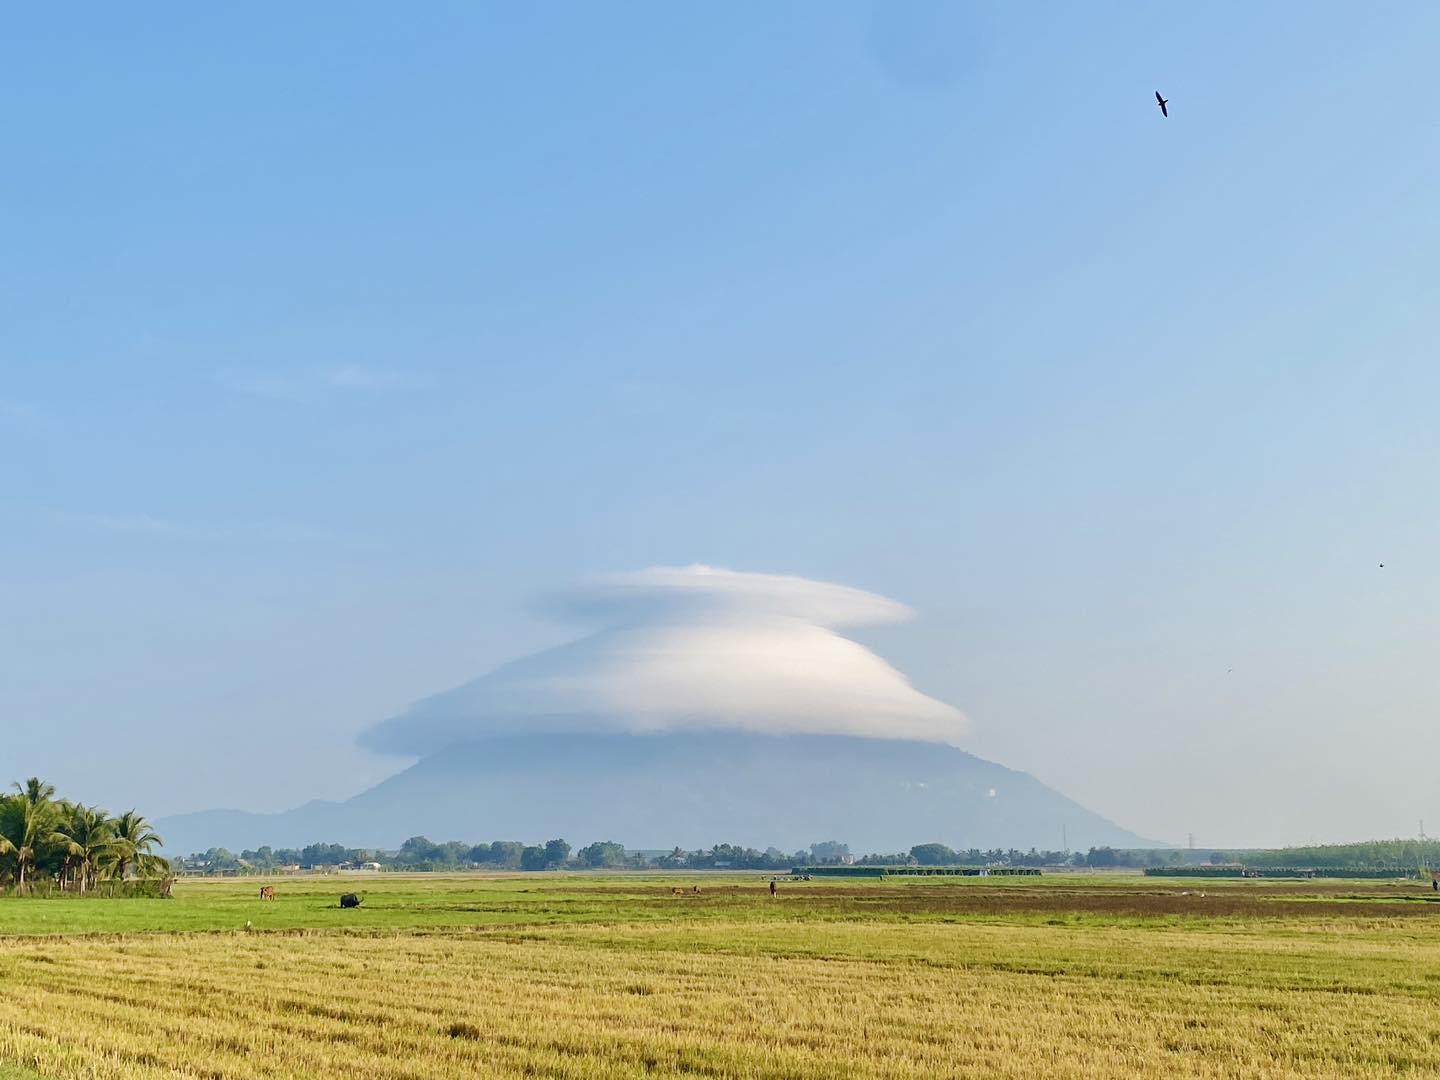 Xuất hiện mũ mây tại núi Bà Đen, người dân Nam bộ về Tây Ninh săn mây và trốn nóng- Ảnh 2.